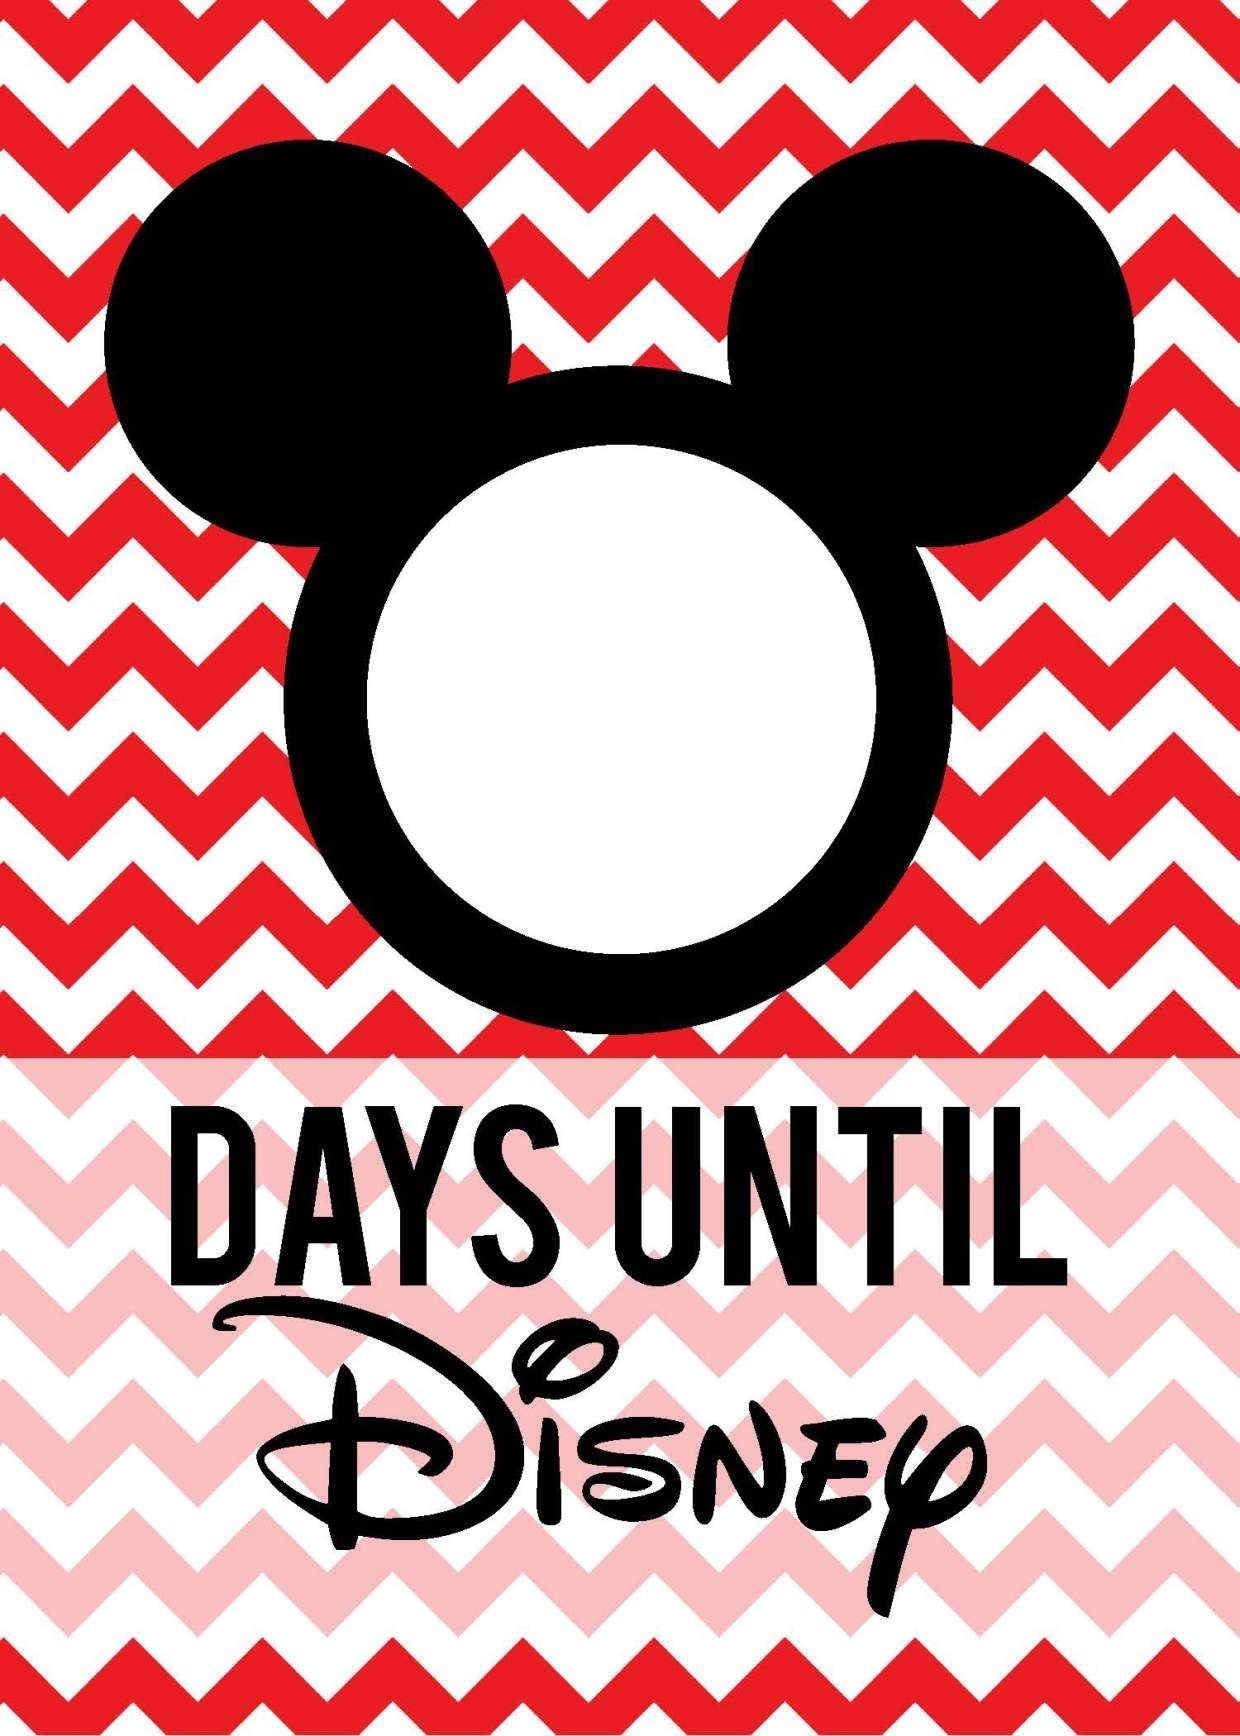 Free Download: Countdown To Disney | Disney Countdown Dashing Count Down To Disney Printables